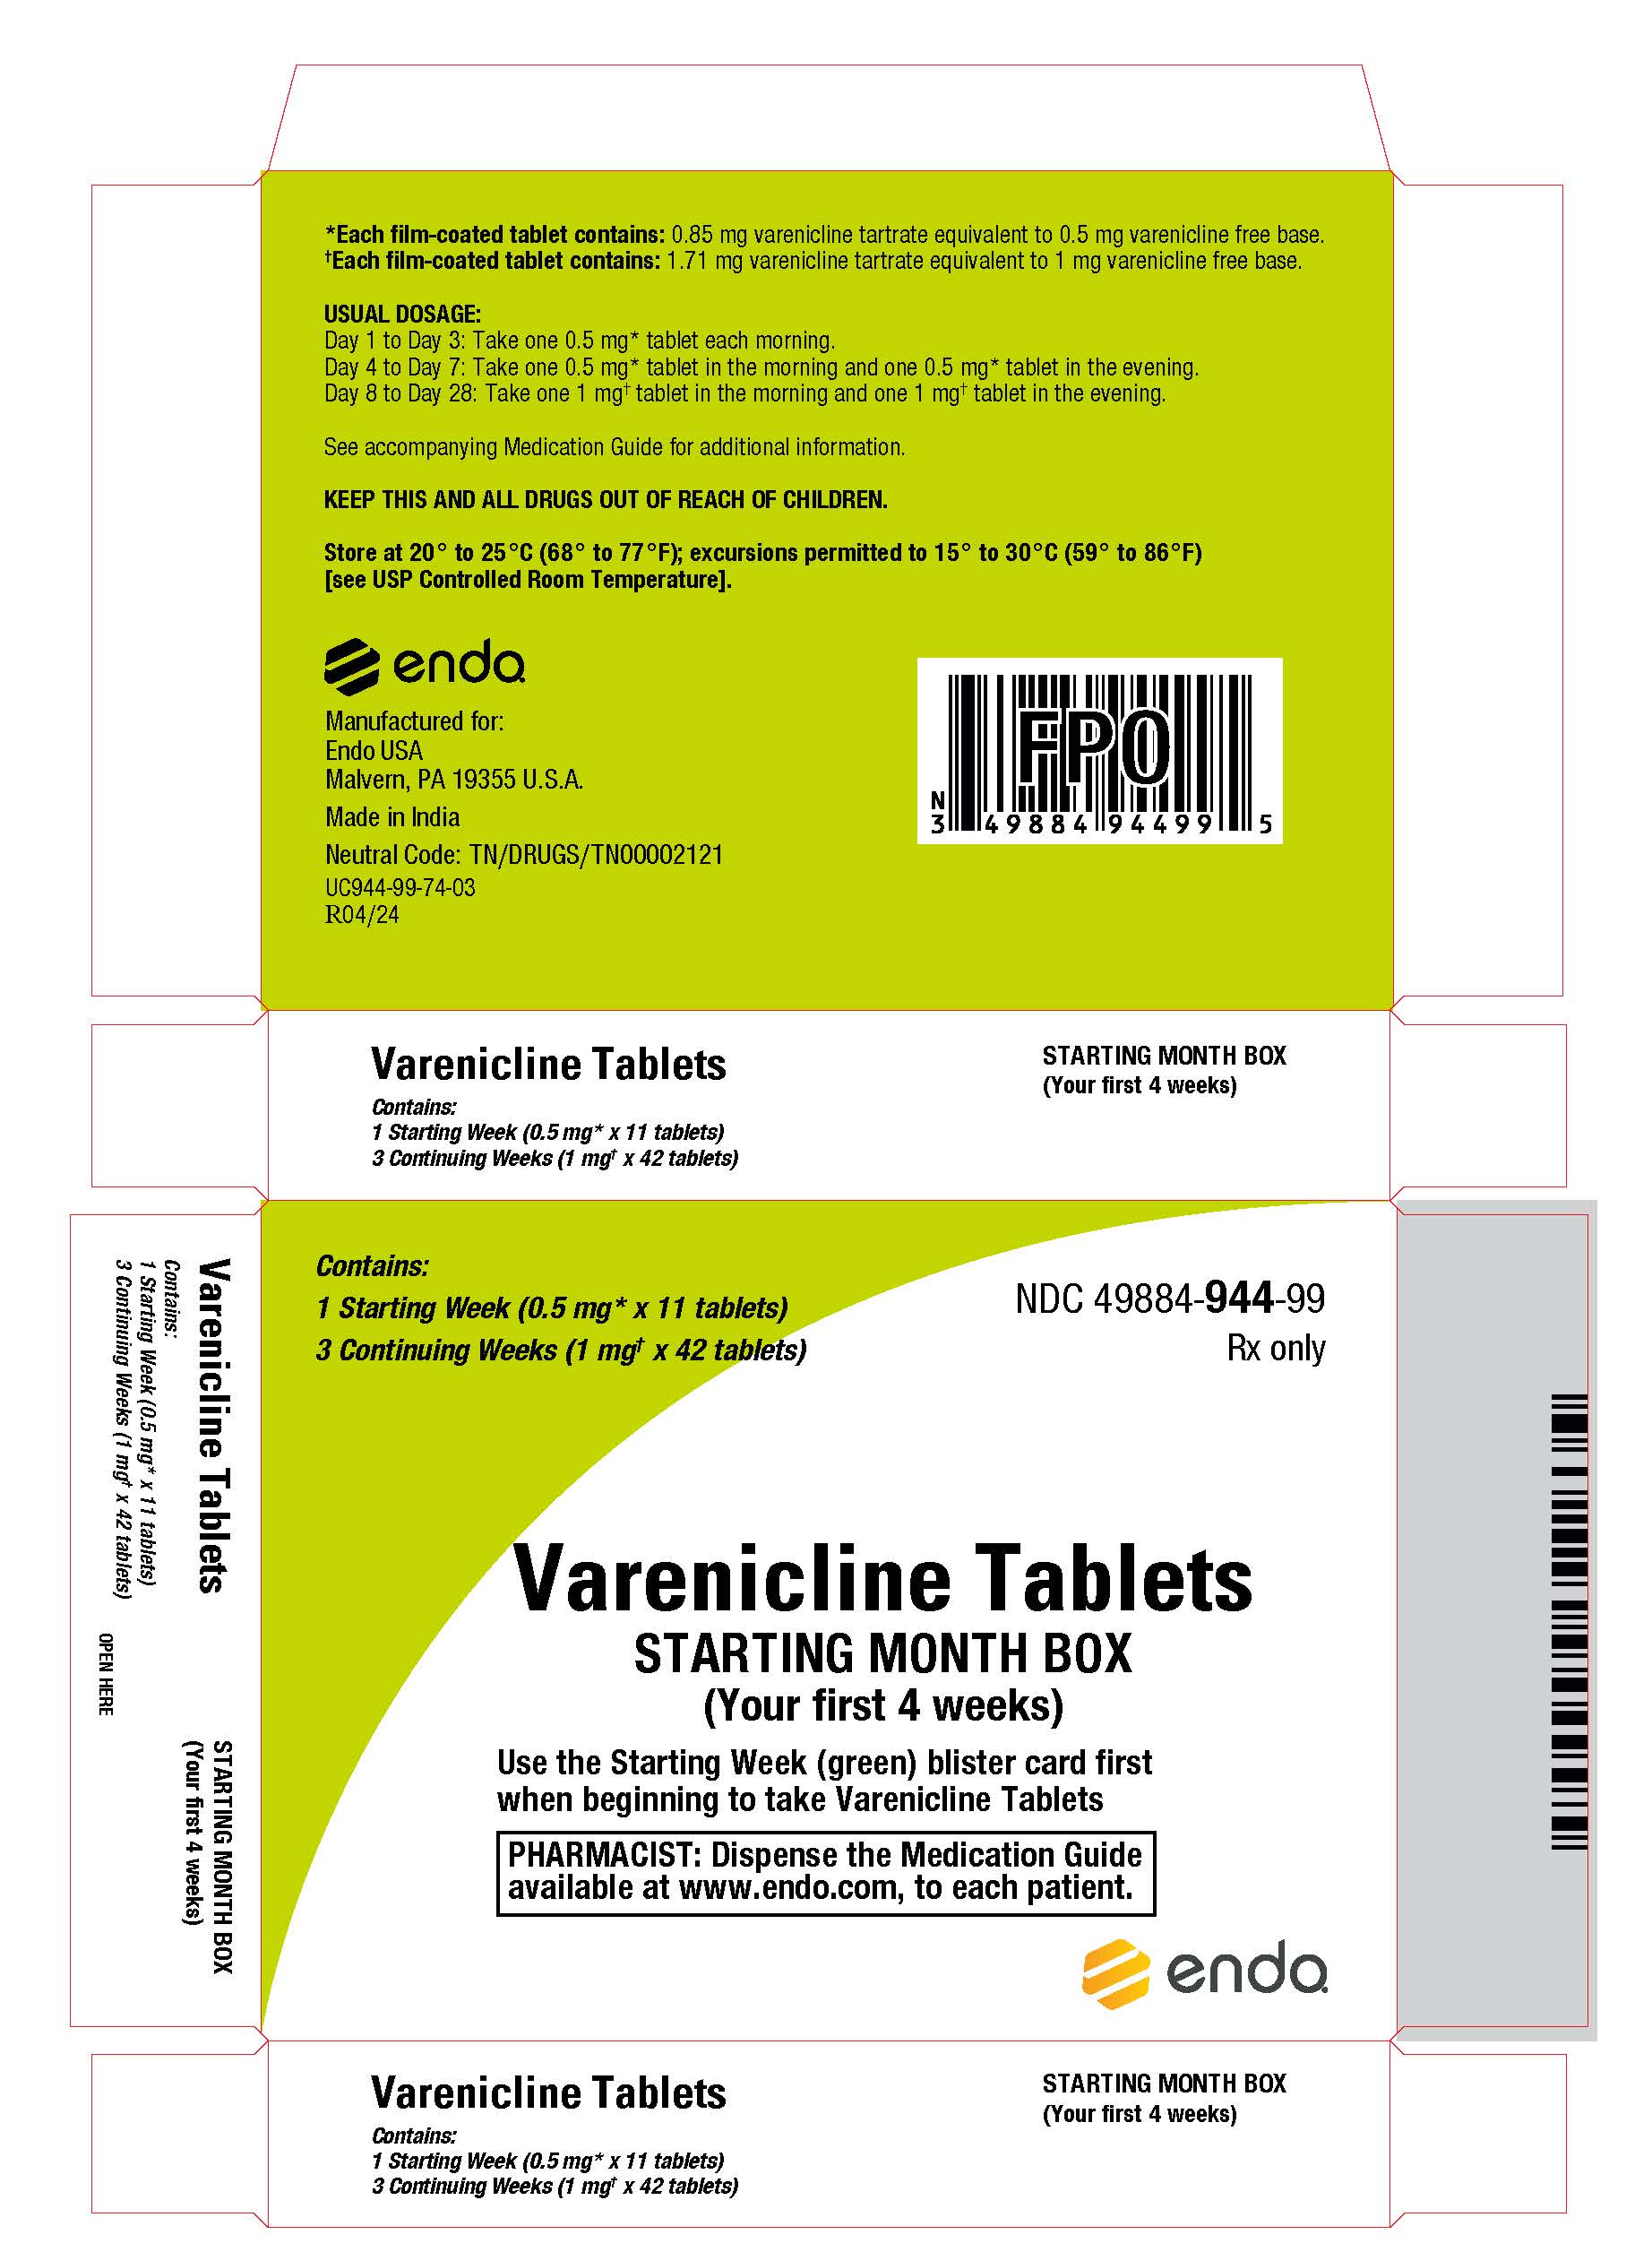 Varenicline_starting month box